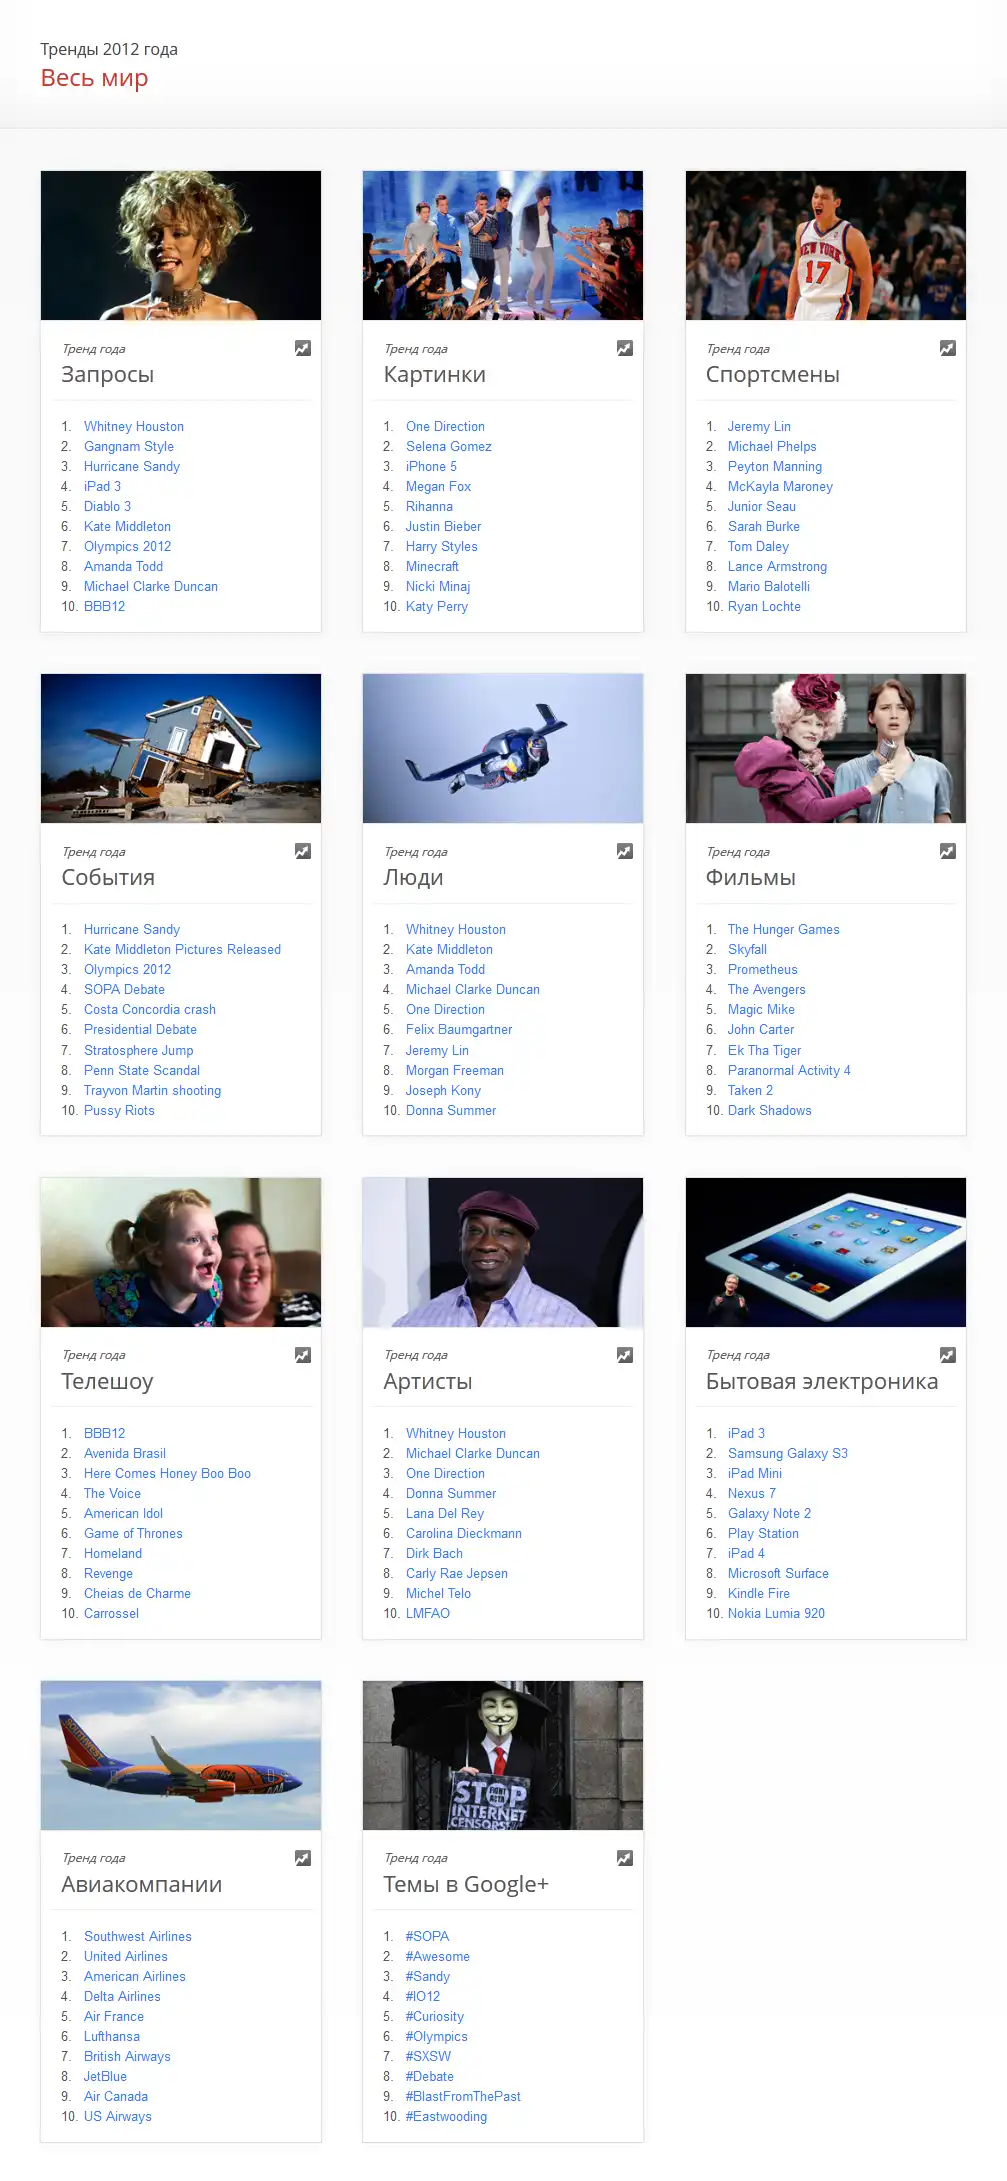 Google Zeitgeist 2012 - что в мире искали больше всего